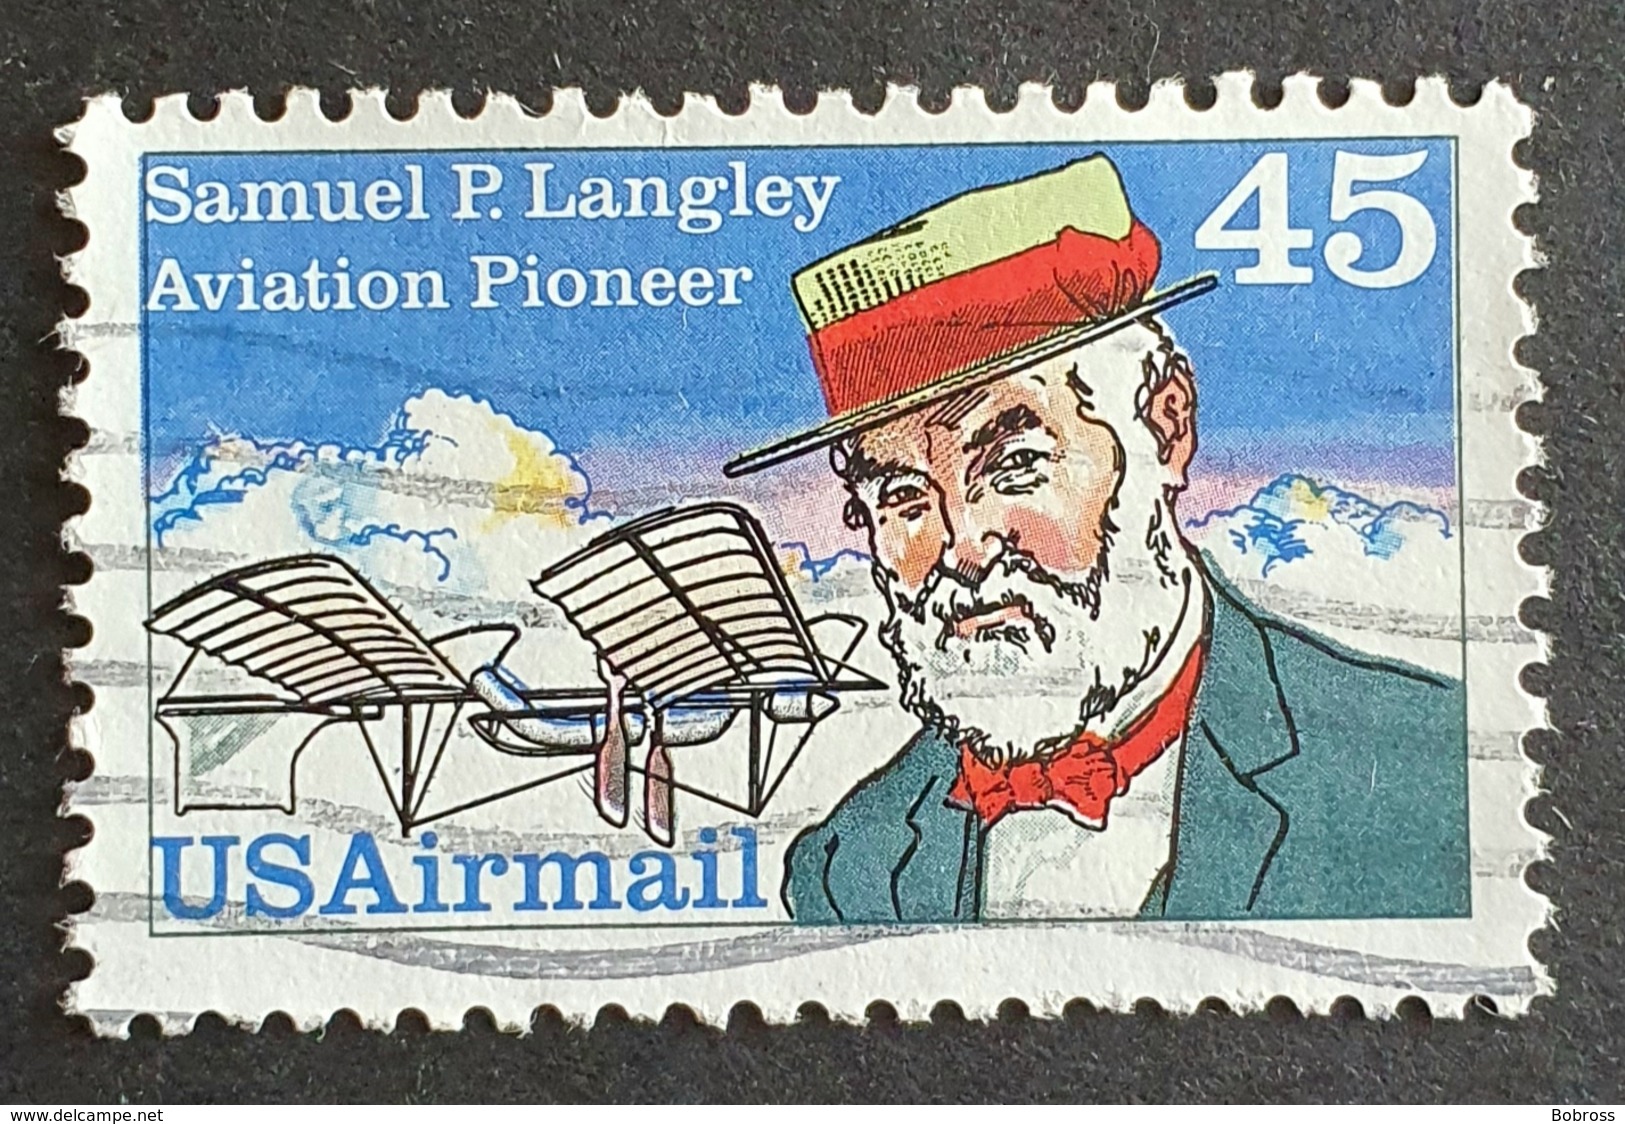 Airmail, #C118, Samuel P. Langley, United States Of America, USA, Used - 2b. 1941-1960 Unused